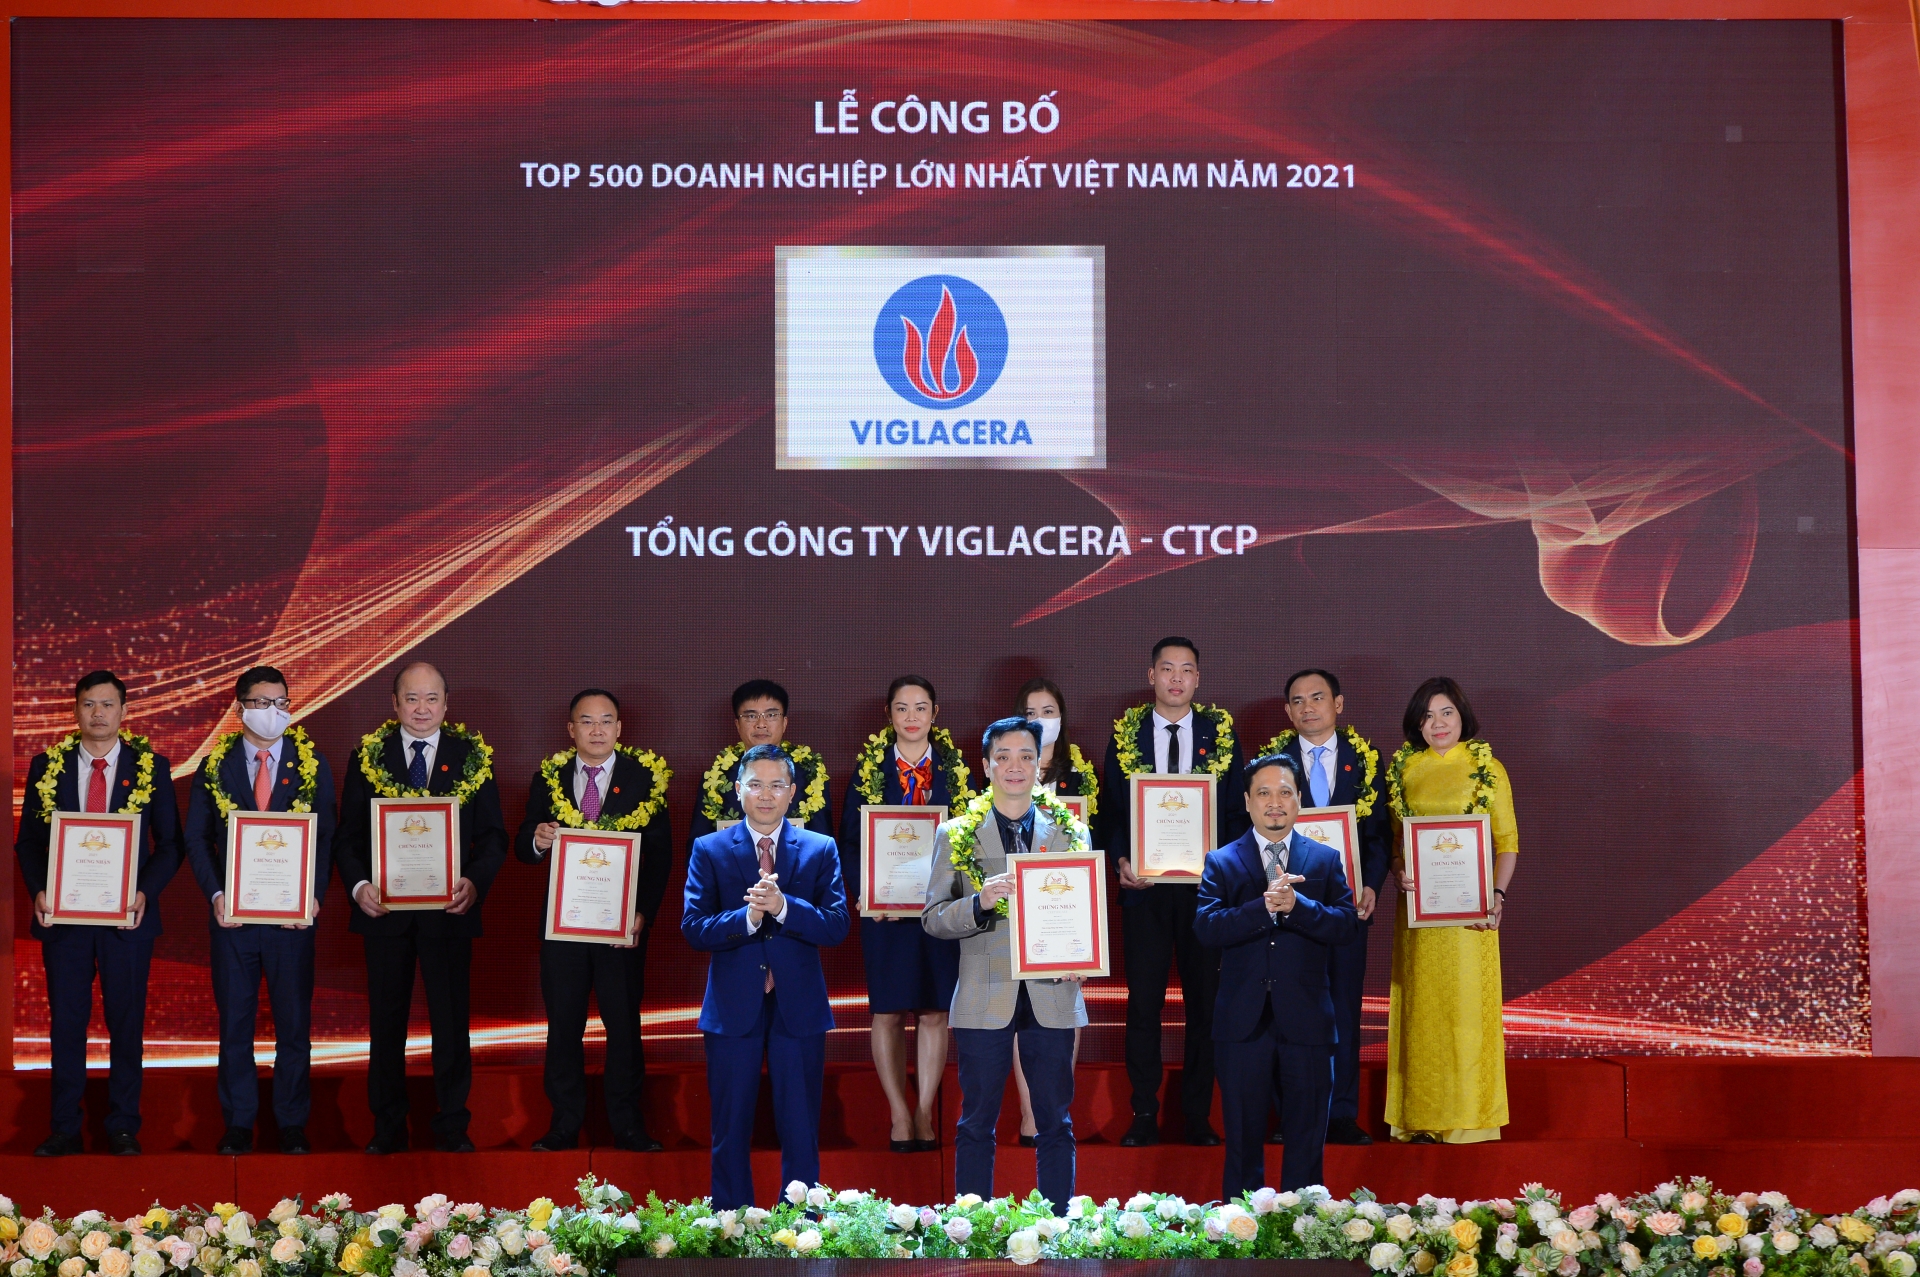 VNR500: Tổng công ty Viglacera – CTCP 4 năm liên tiếp giữ vị trí top đầu trong Top 500 doanh nghiệp lớn nhất Việt Nam trong ngành sản xuất, kinh doanh vật liệu xây dựng